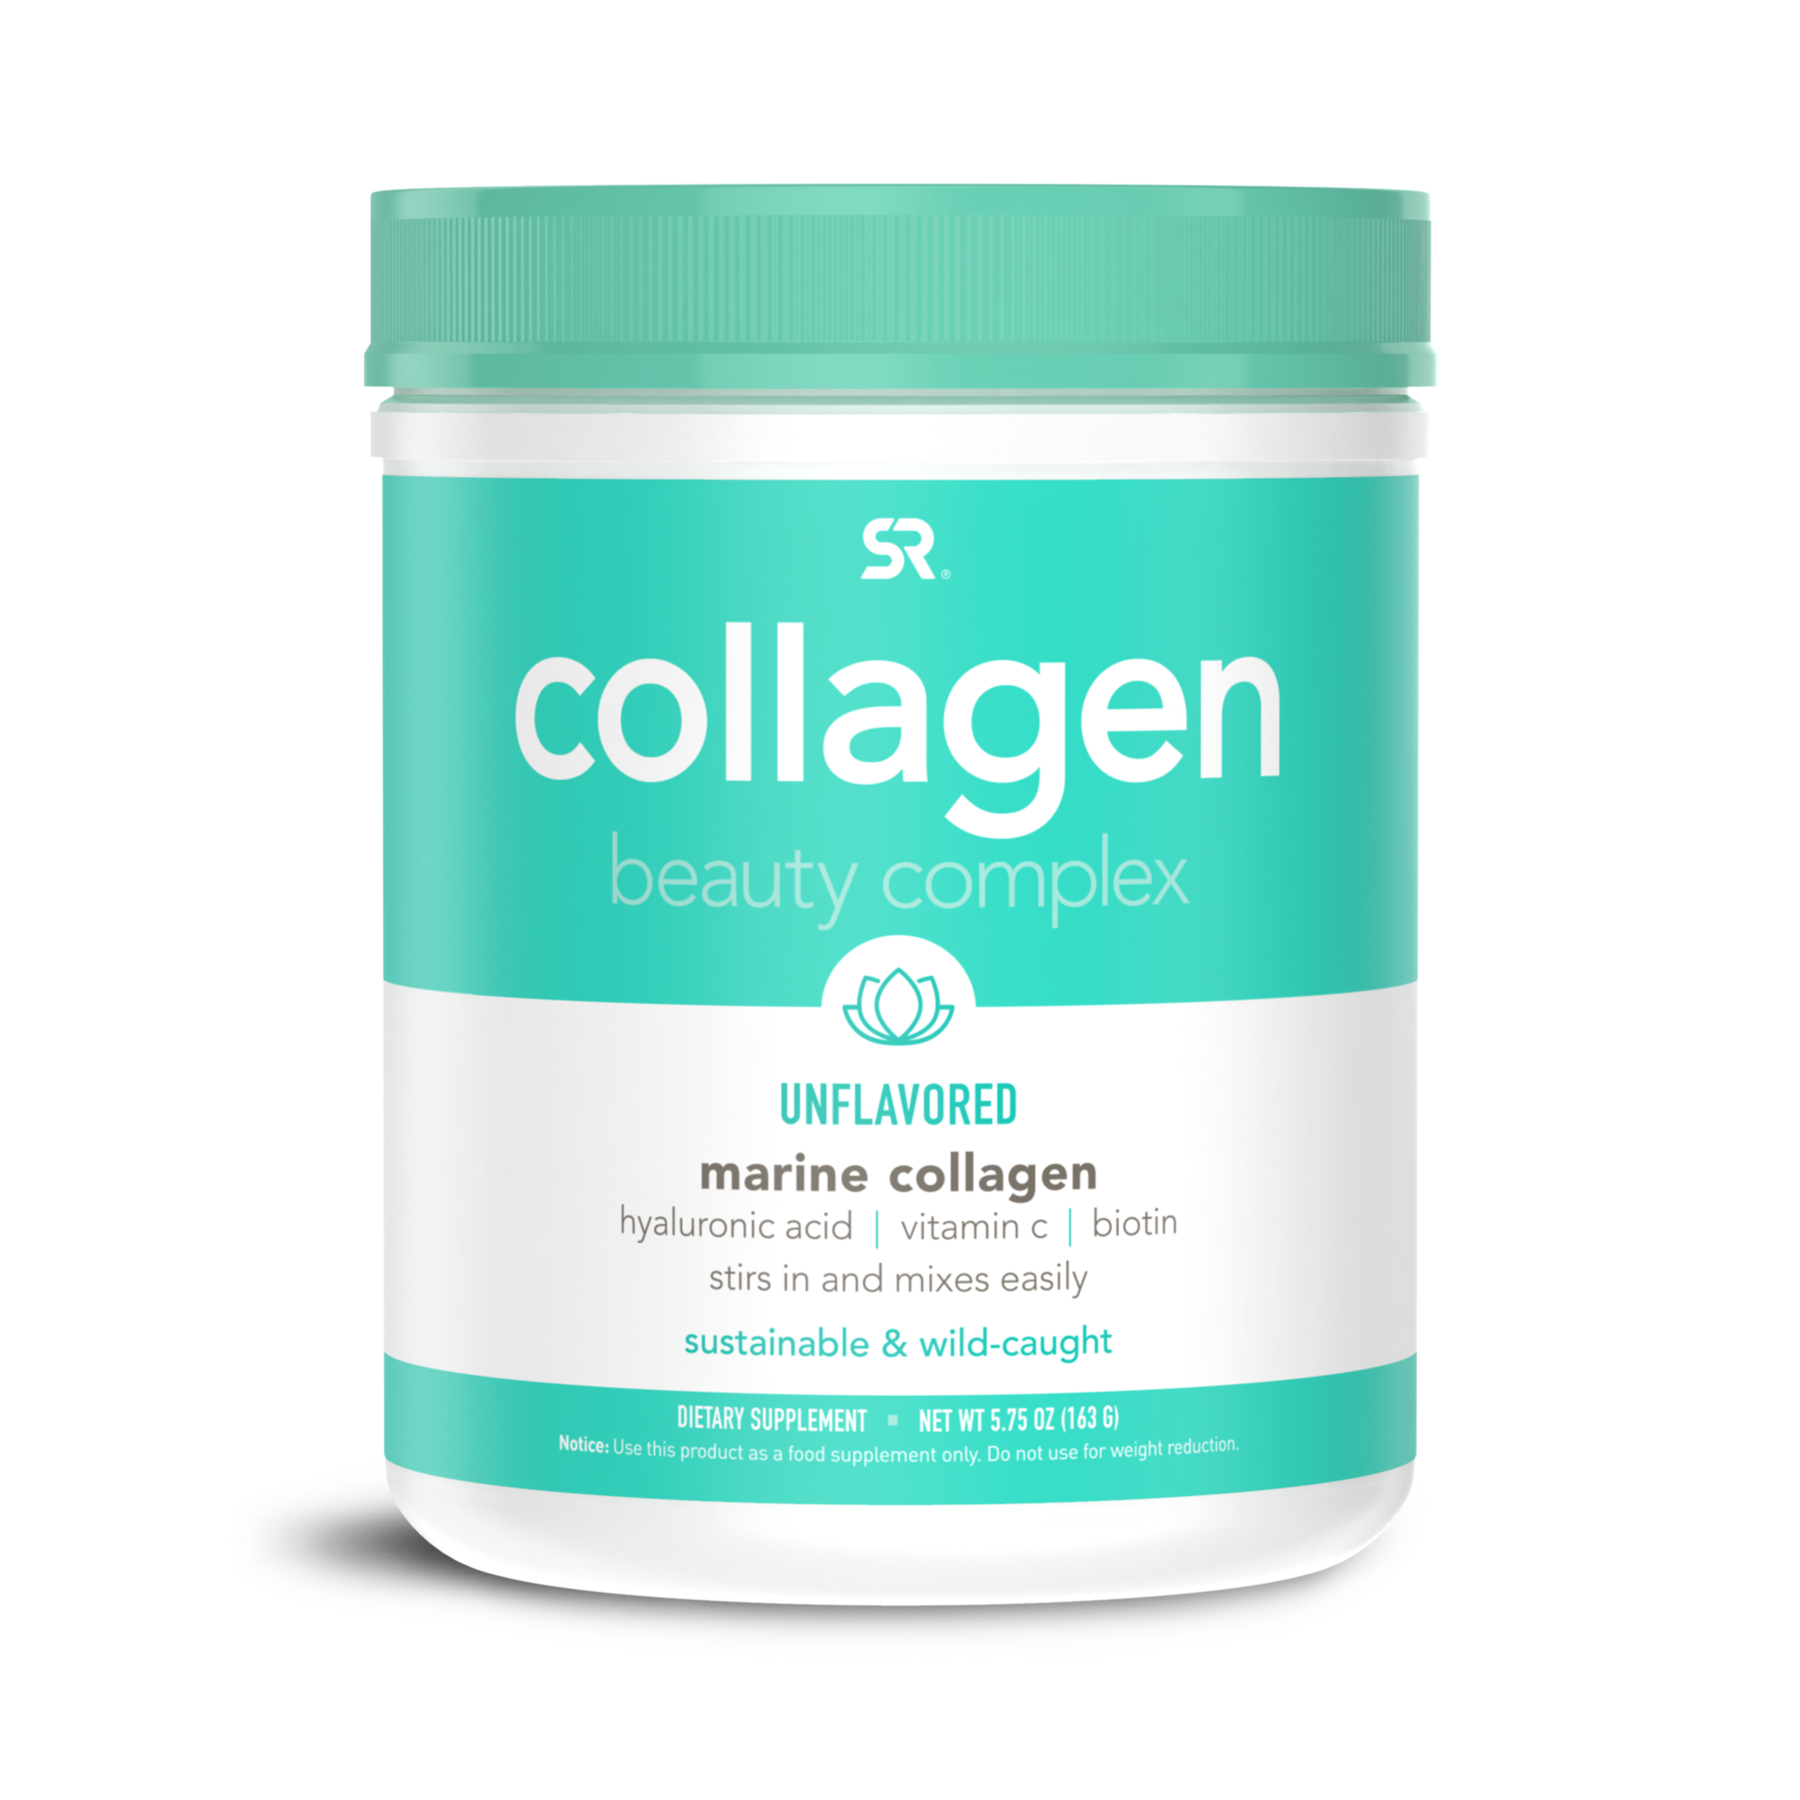 Marine collagen. Коллаген Sports research Beauty Complex. Коллаген Beauty Complex Marine Collagen. Collagen Beauty Complex, Marine Collagen, Unflavored, 5.75 oz (163 g). Marine Collagen Hyaluronic acid.